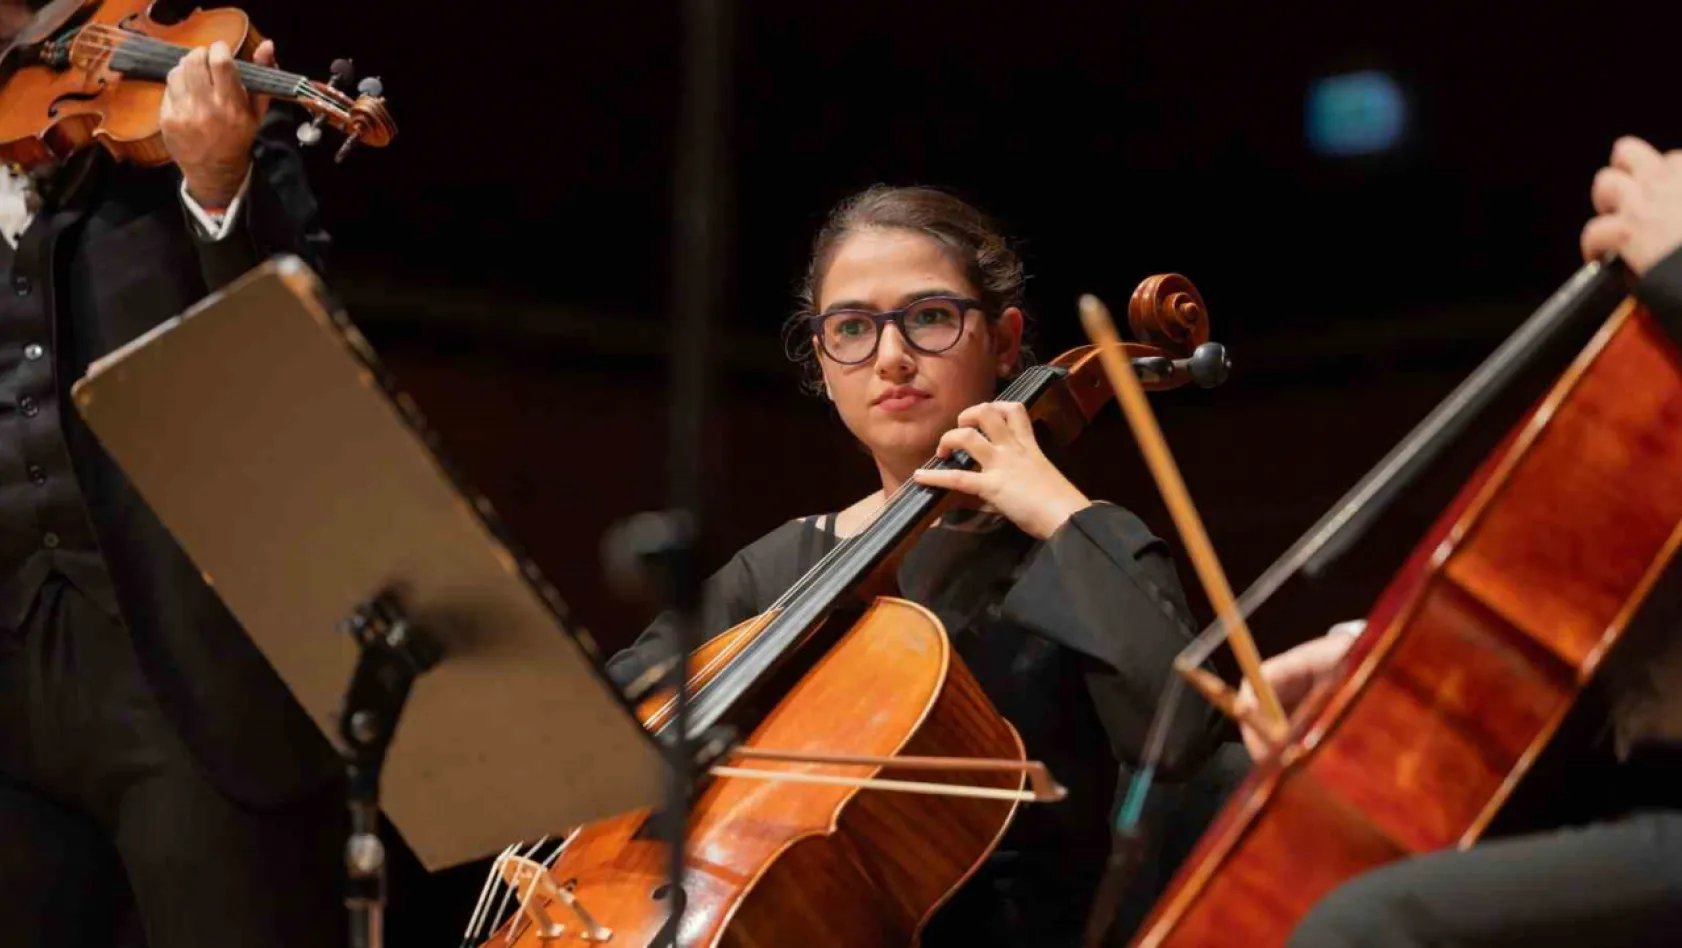 İtalya'da klasik müzik konserlerinde türkü söyleyen kız